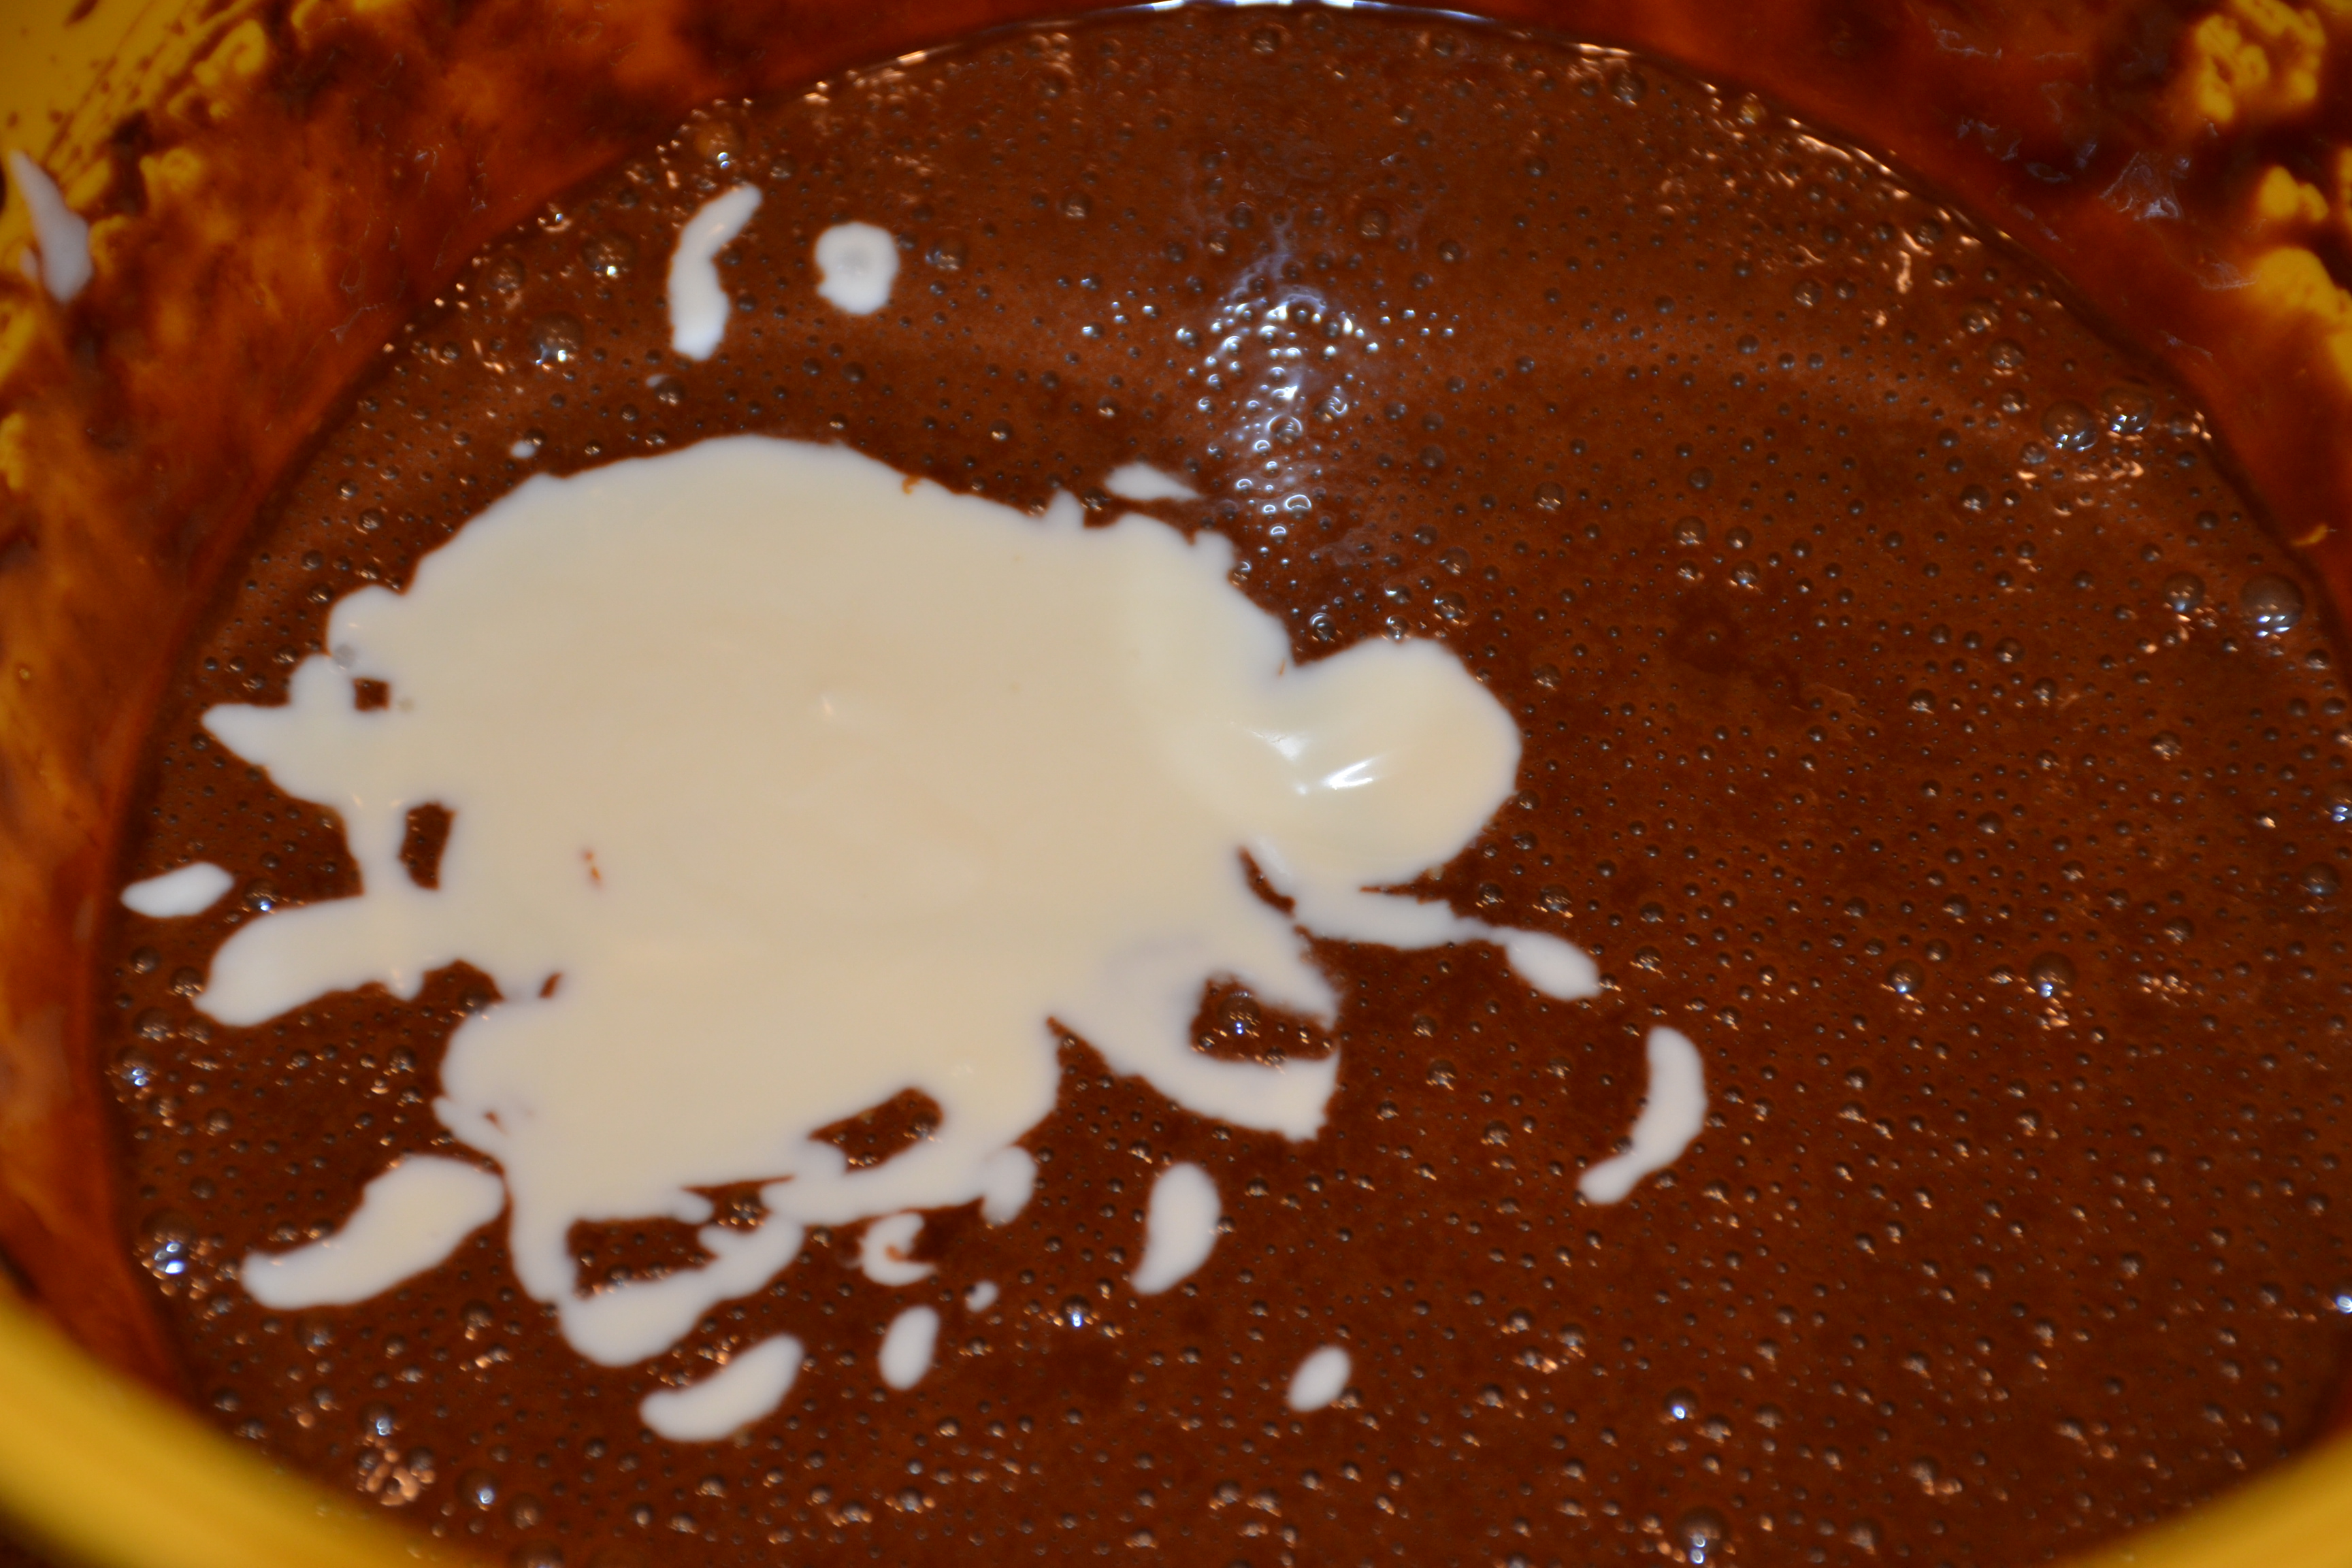 Tort de ciocolata cu mousse de iaurt si mure